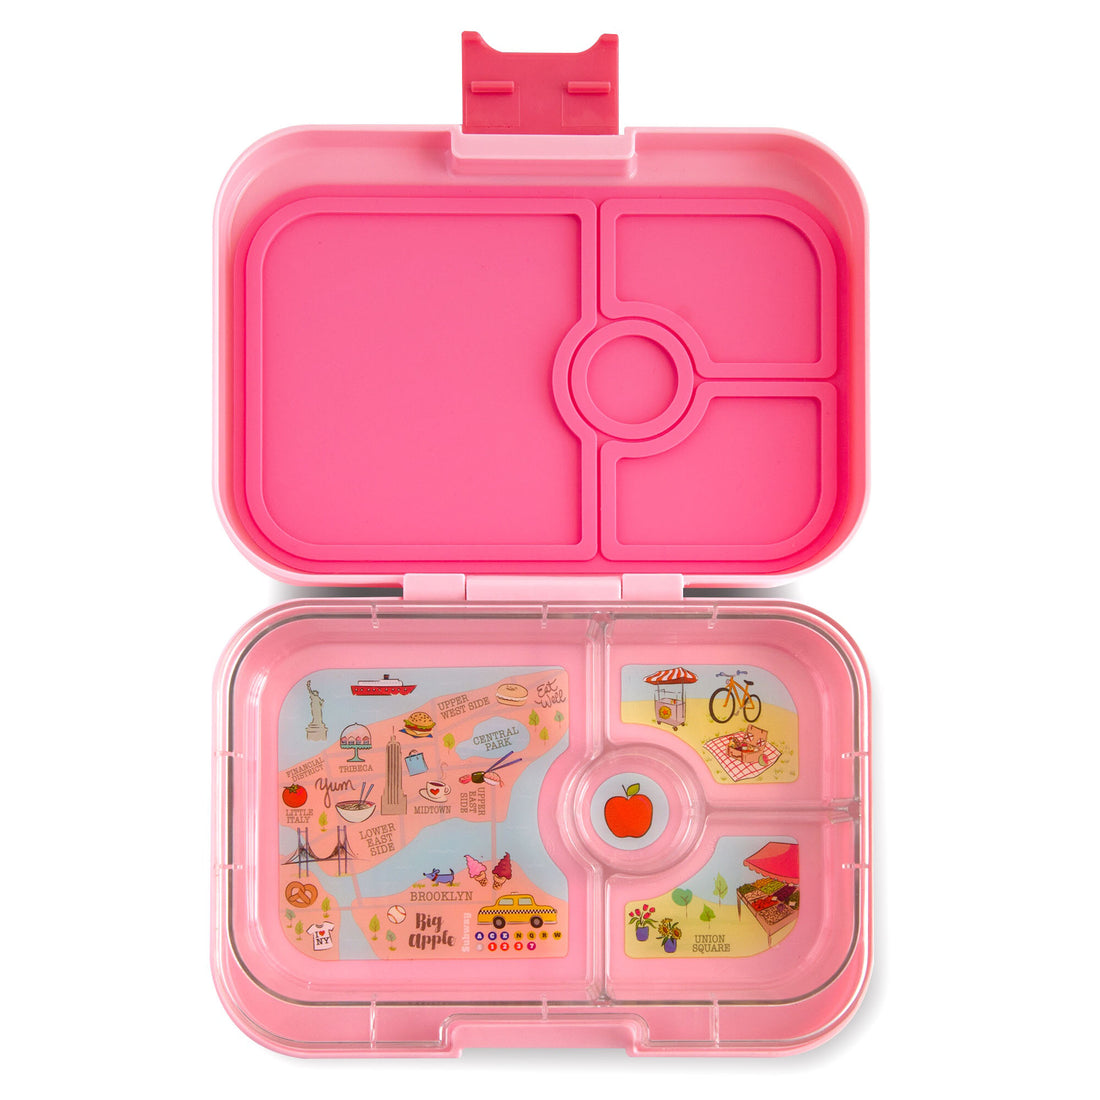 yumbox-panino-gramercy-pink-nyc-4-compartment-lunch-box- (1)